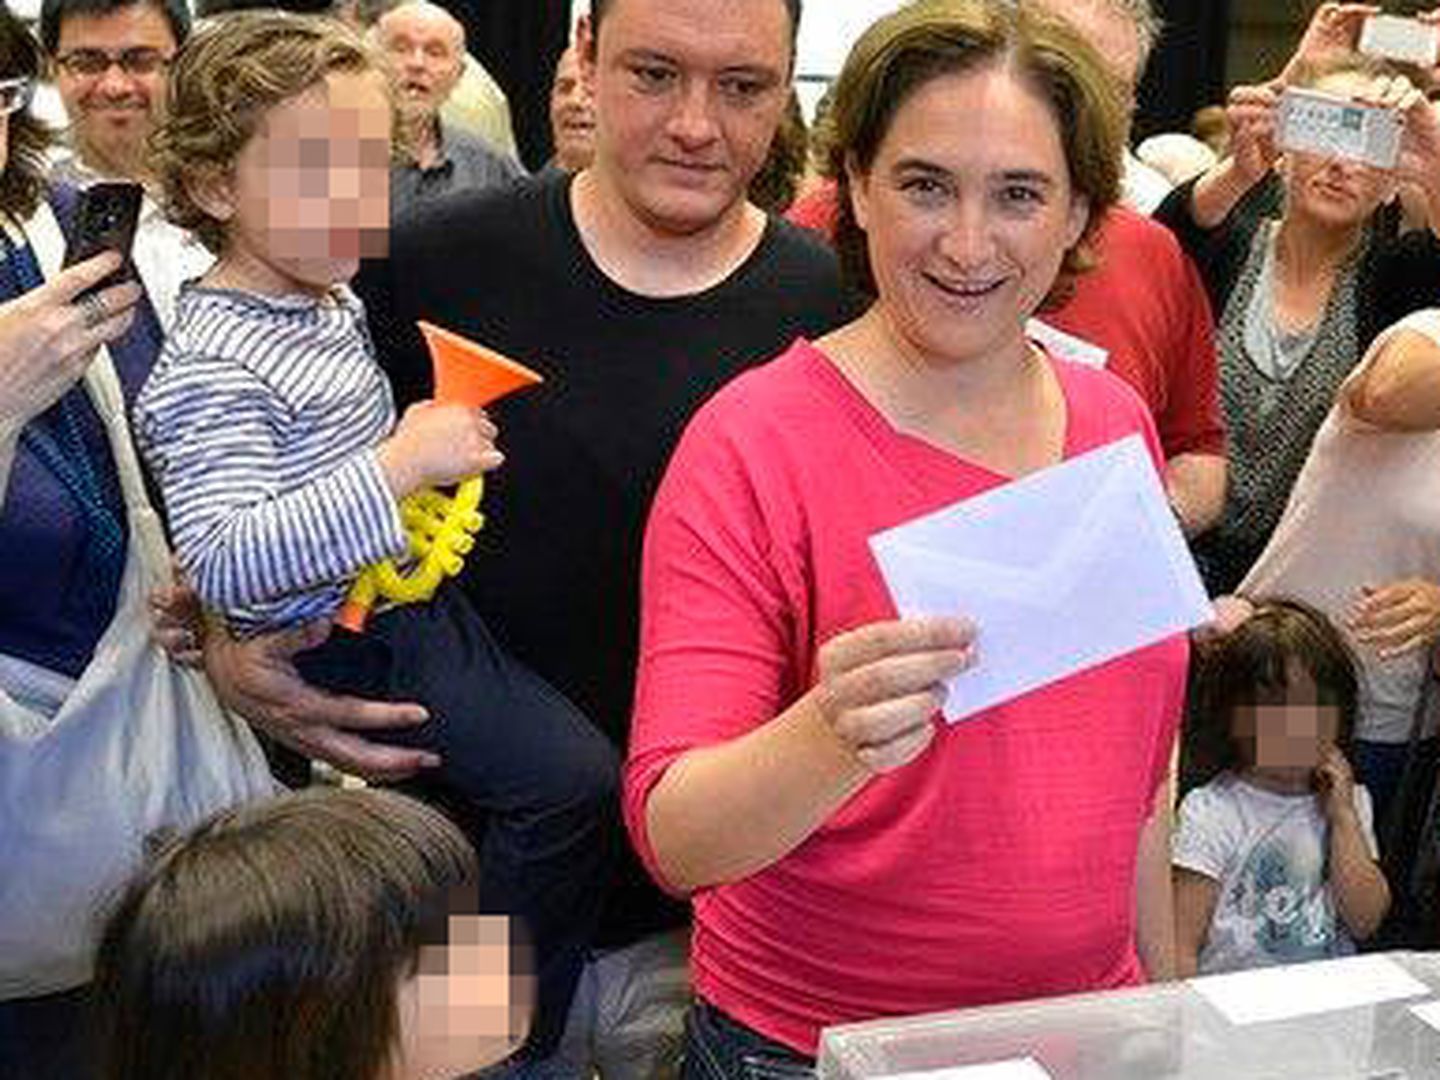 La alcaldesa de Barcelona, en una foto de archivo en la que acude a votar acompañada de Adrià Alemany. (EFE)